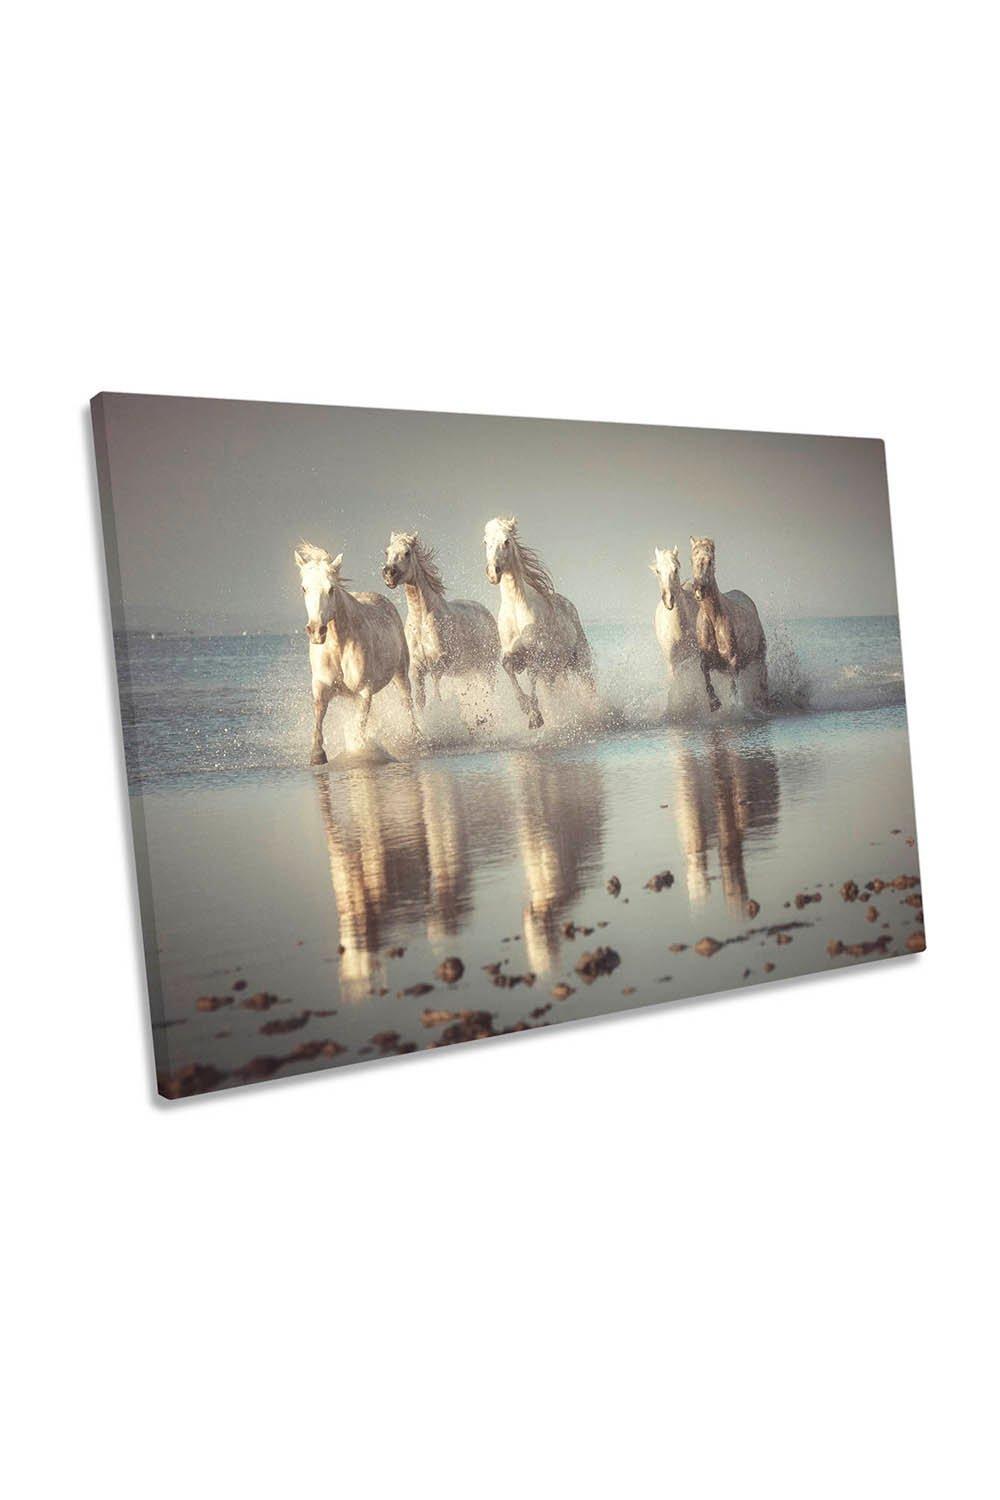 Camargue White Horses Beach Canvas Wall Art Picture Print